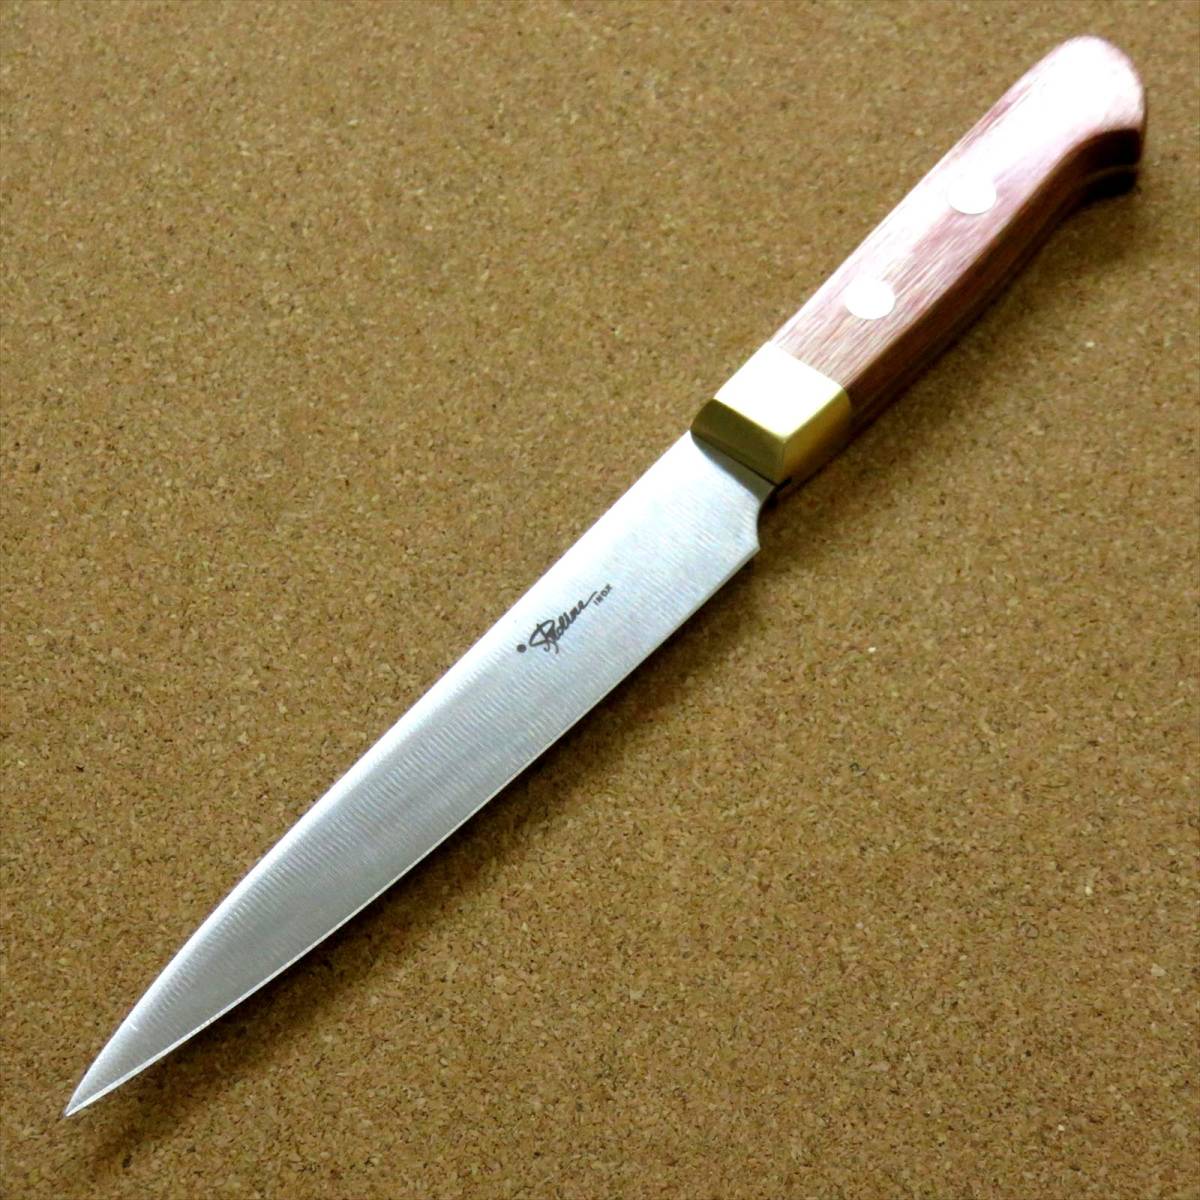 関の刃物 ペティナイフ 12cm (120mm) 8Aステンレス 真鍮口金付き 赤合板 果物包丁 野菜 皮むき 小型両刃ナイフ 日本製 在庫処分品